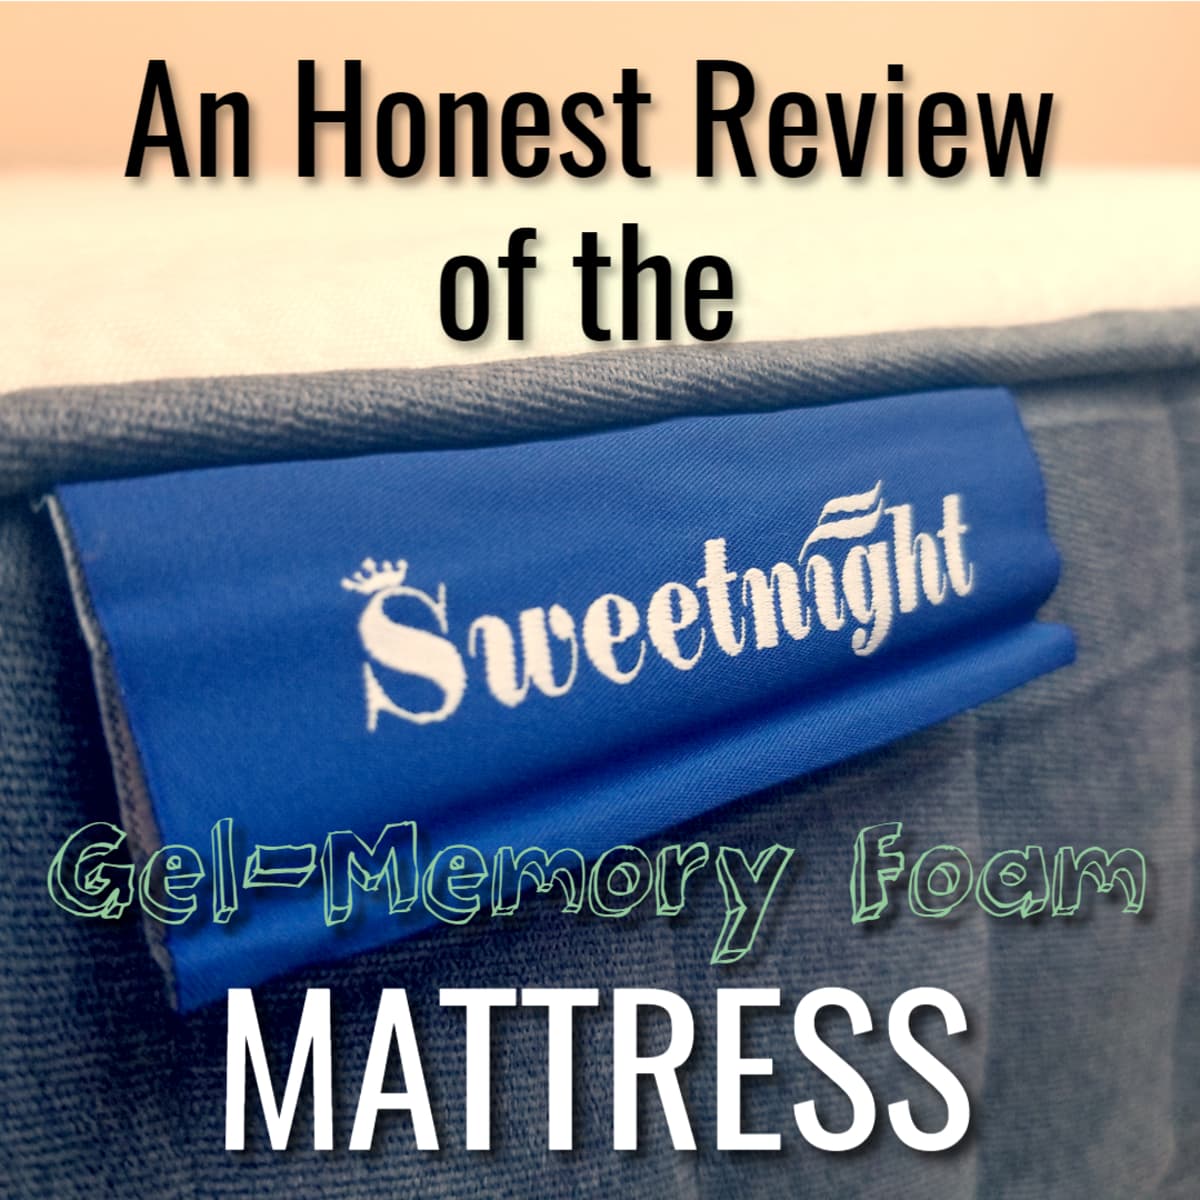 SweetNight Original Cooling Gel Foam Pillow review: an